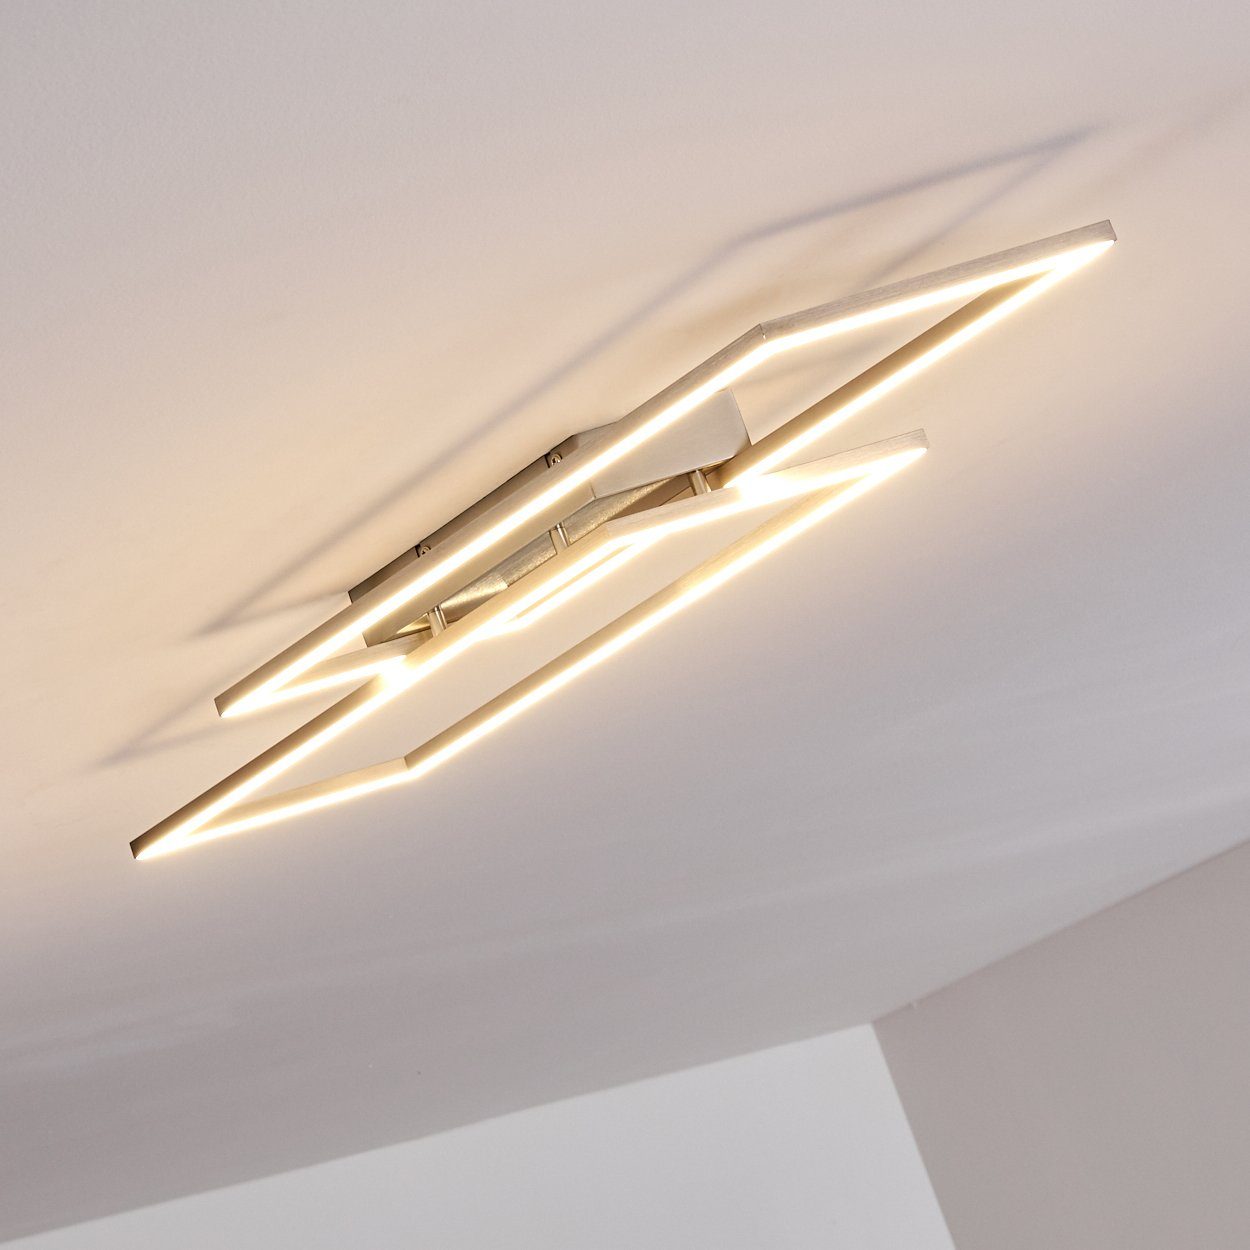 LED Design dimmbare Wohn Deckenleuchte hofstein Flur Dielen Lampen Beleuchtung Decken Ess